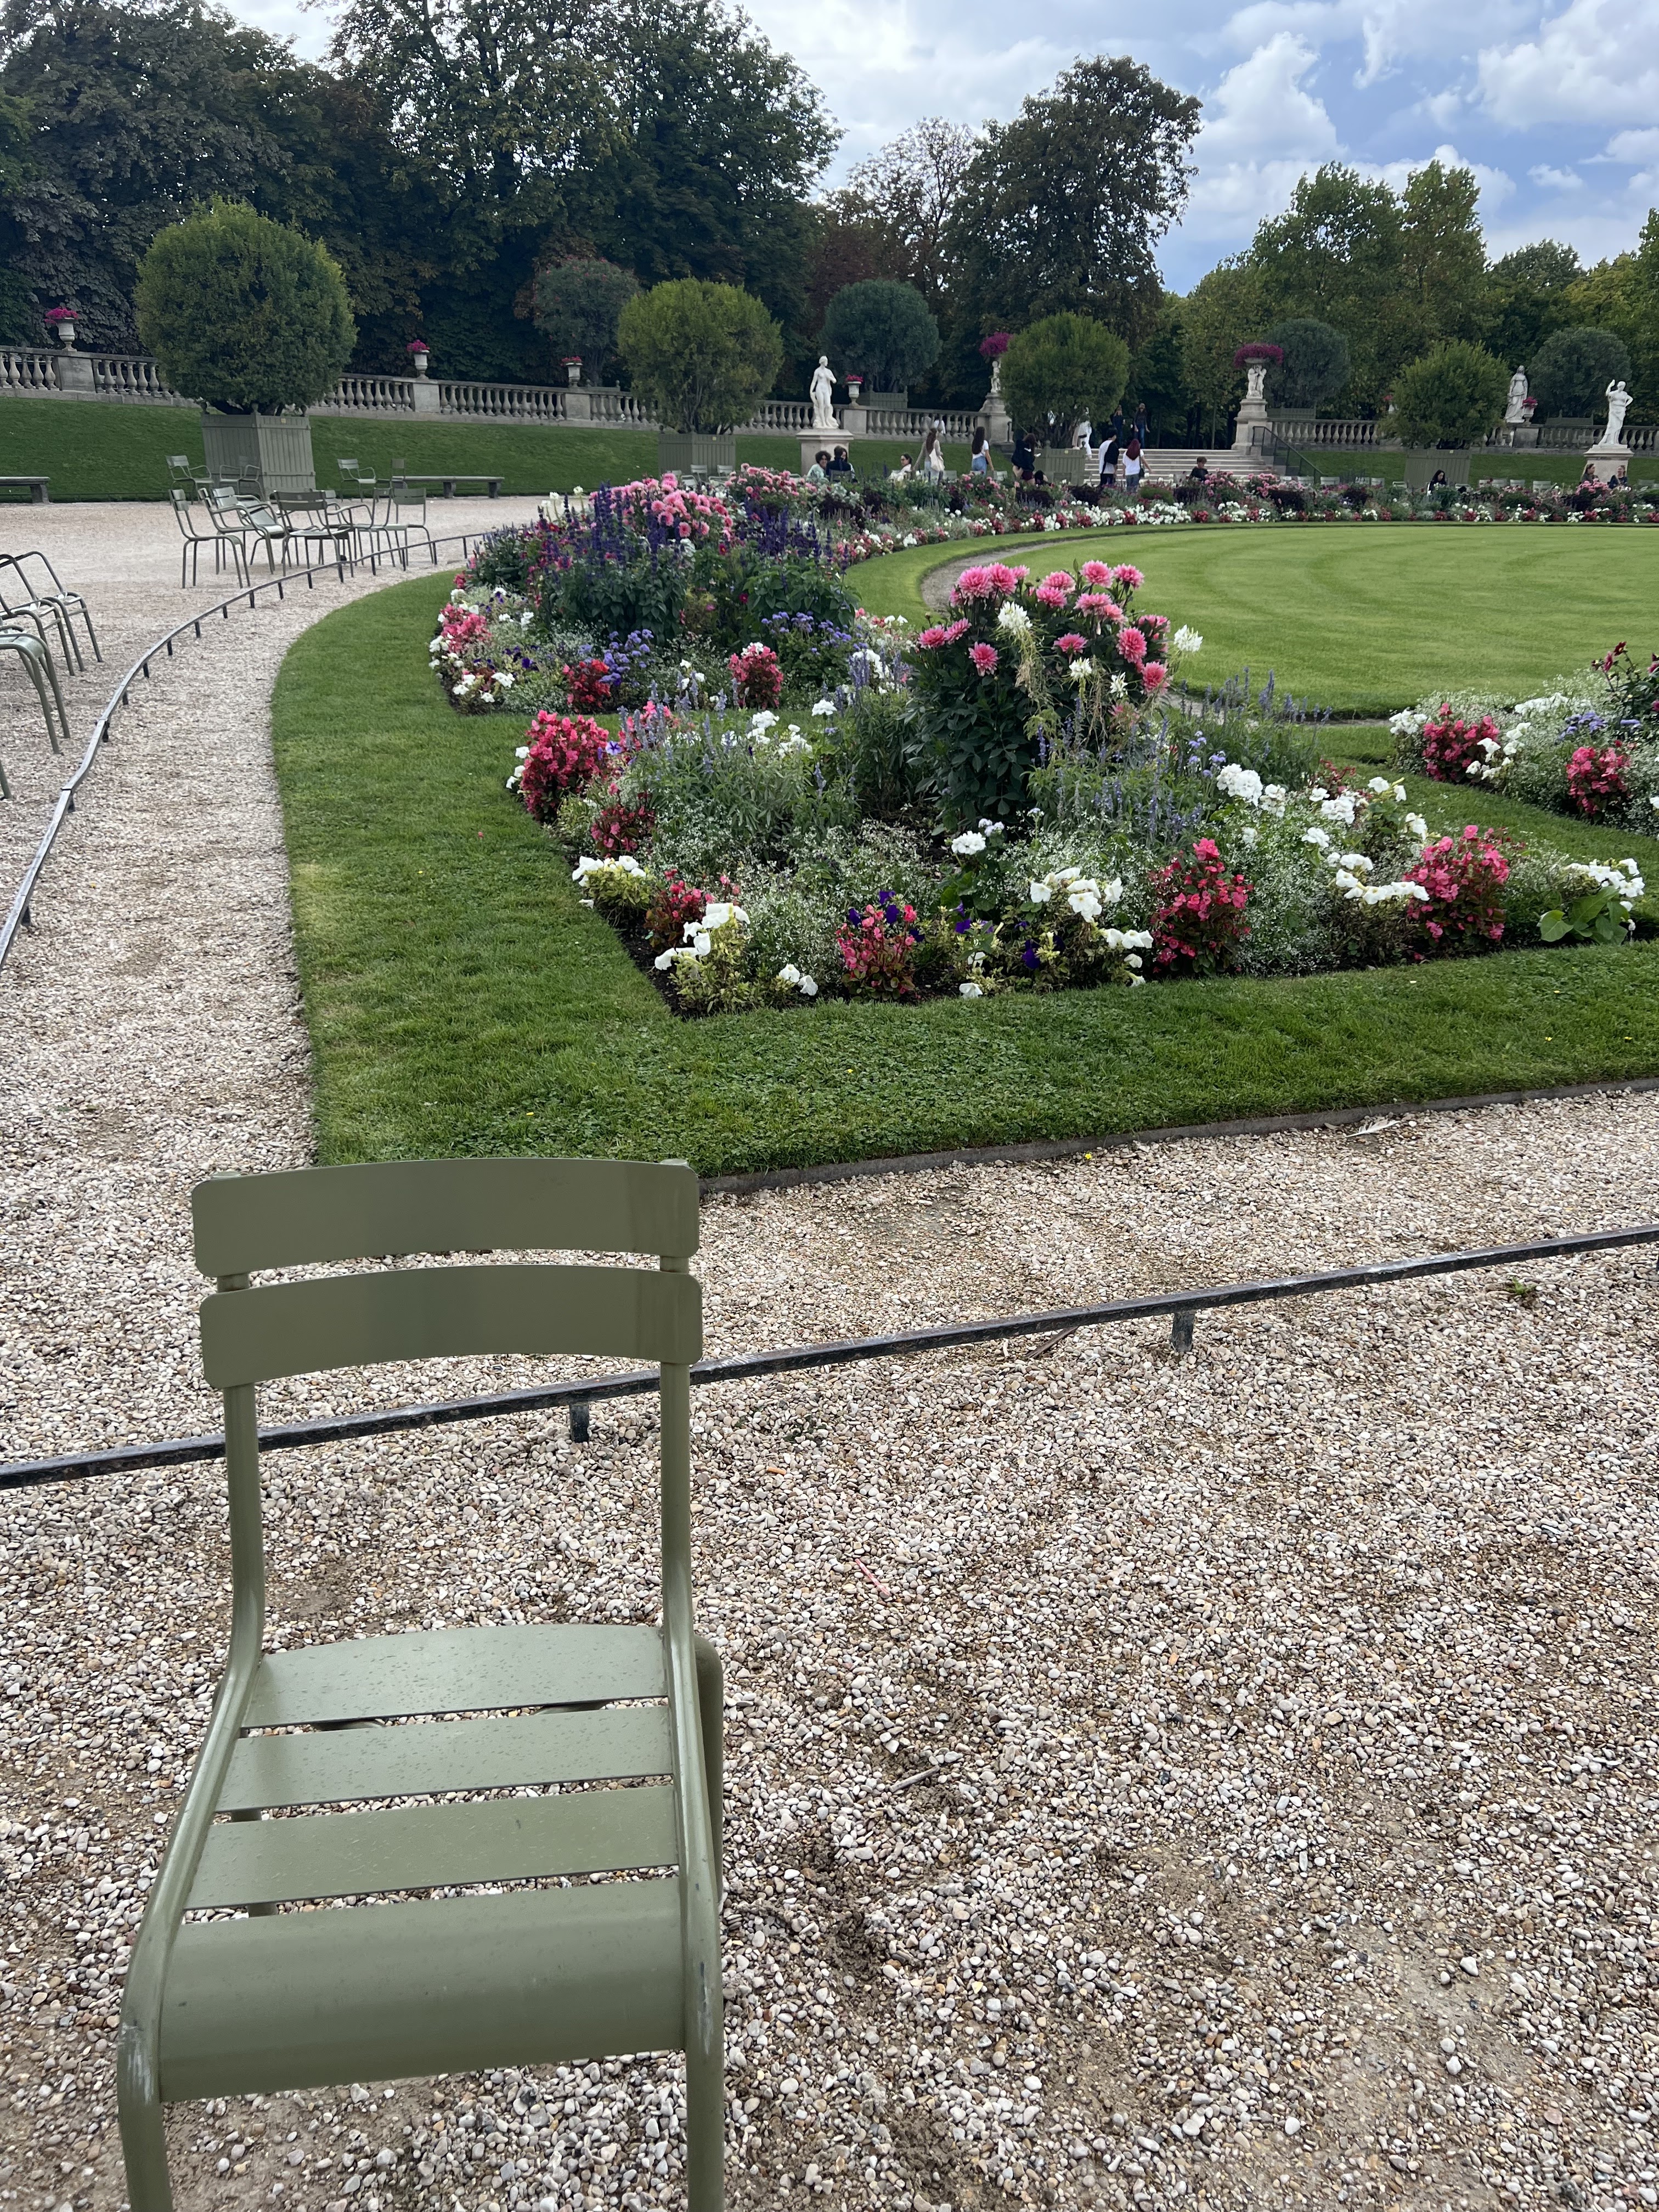 paris france travel guide, paris garden, paris parks, free things to do in paris